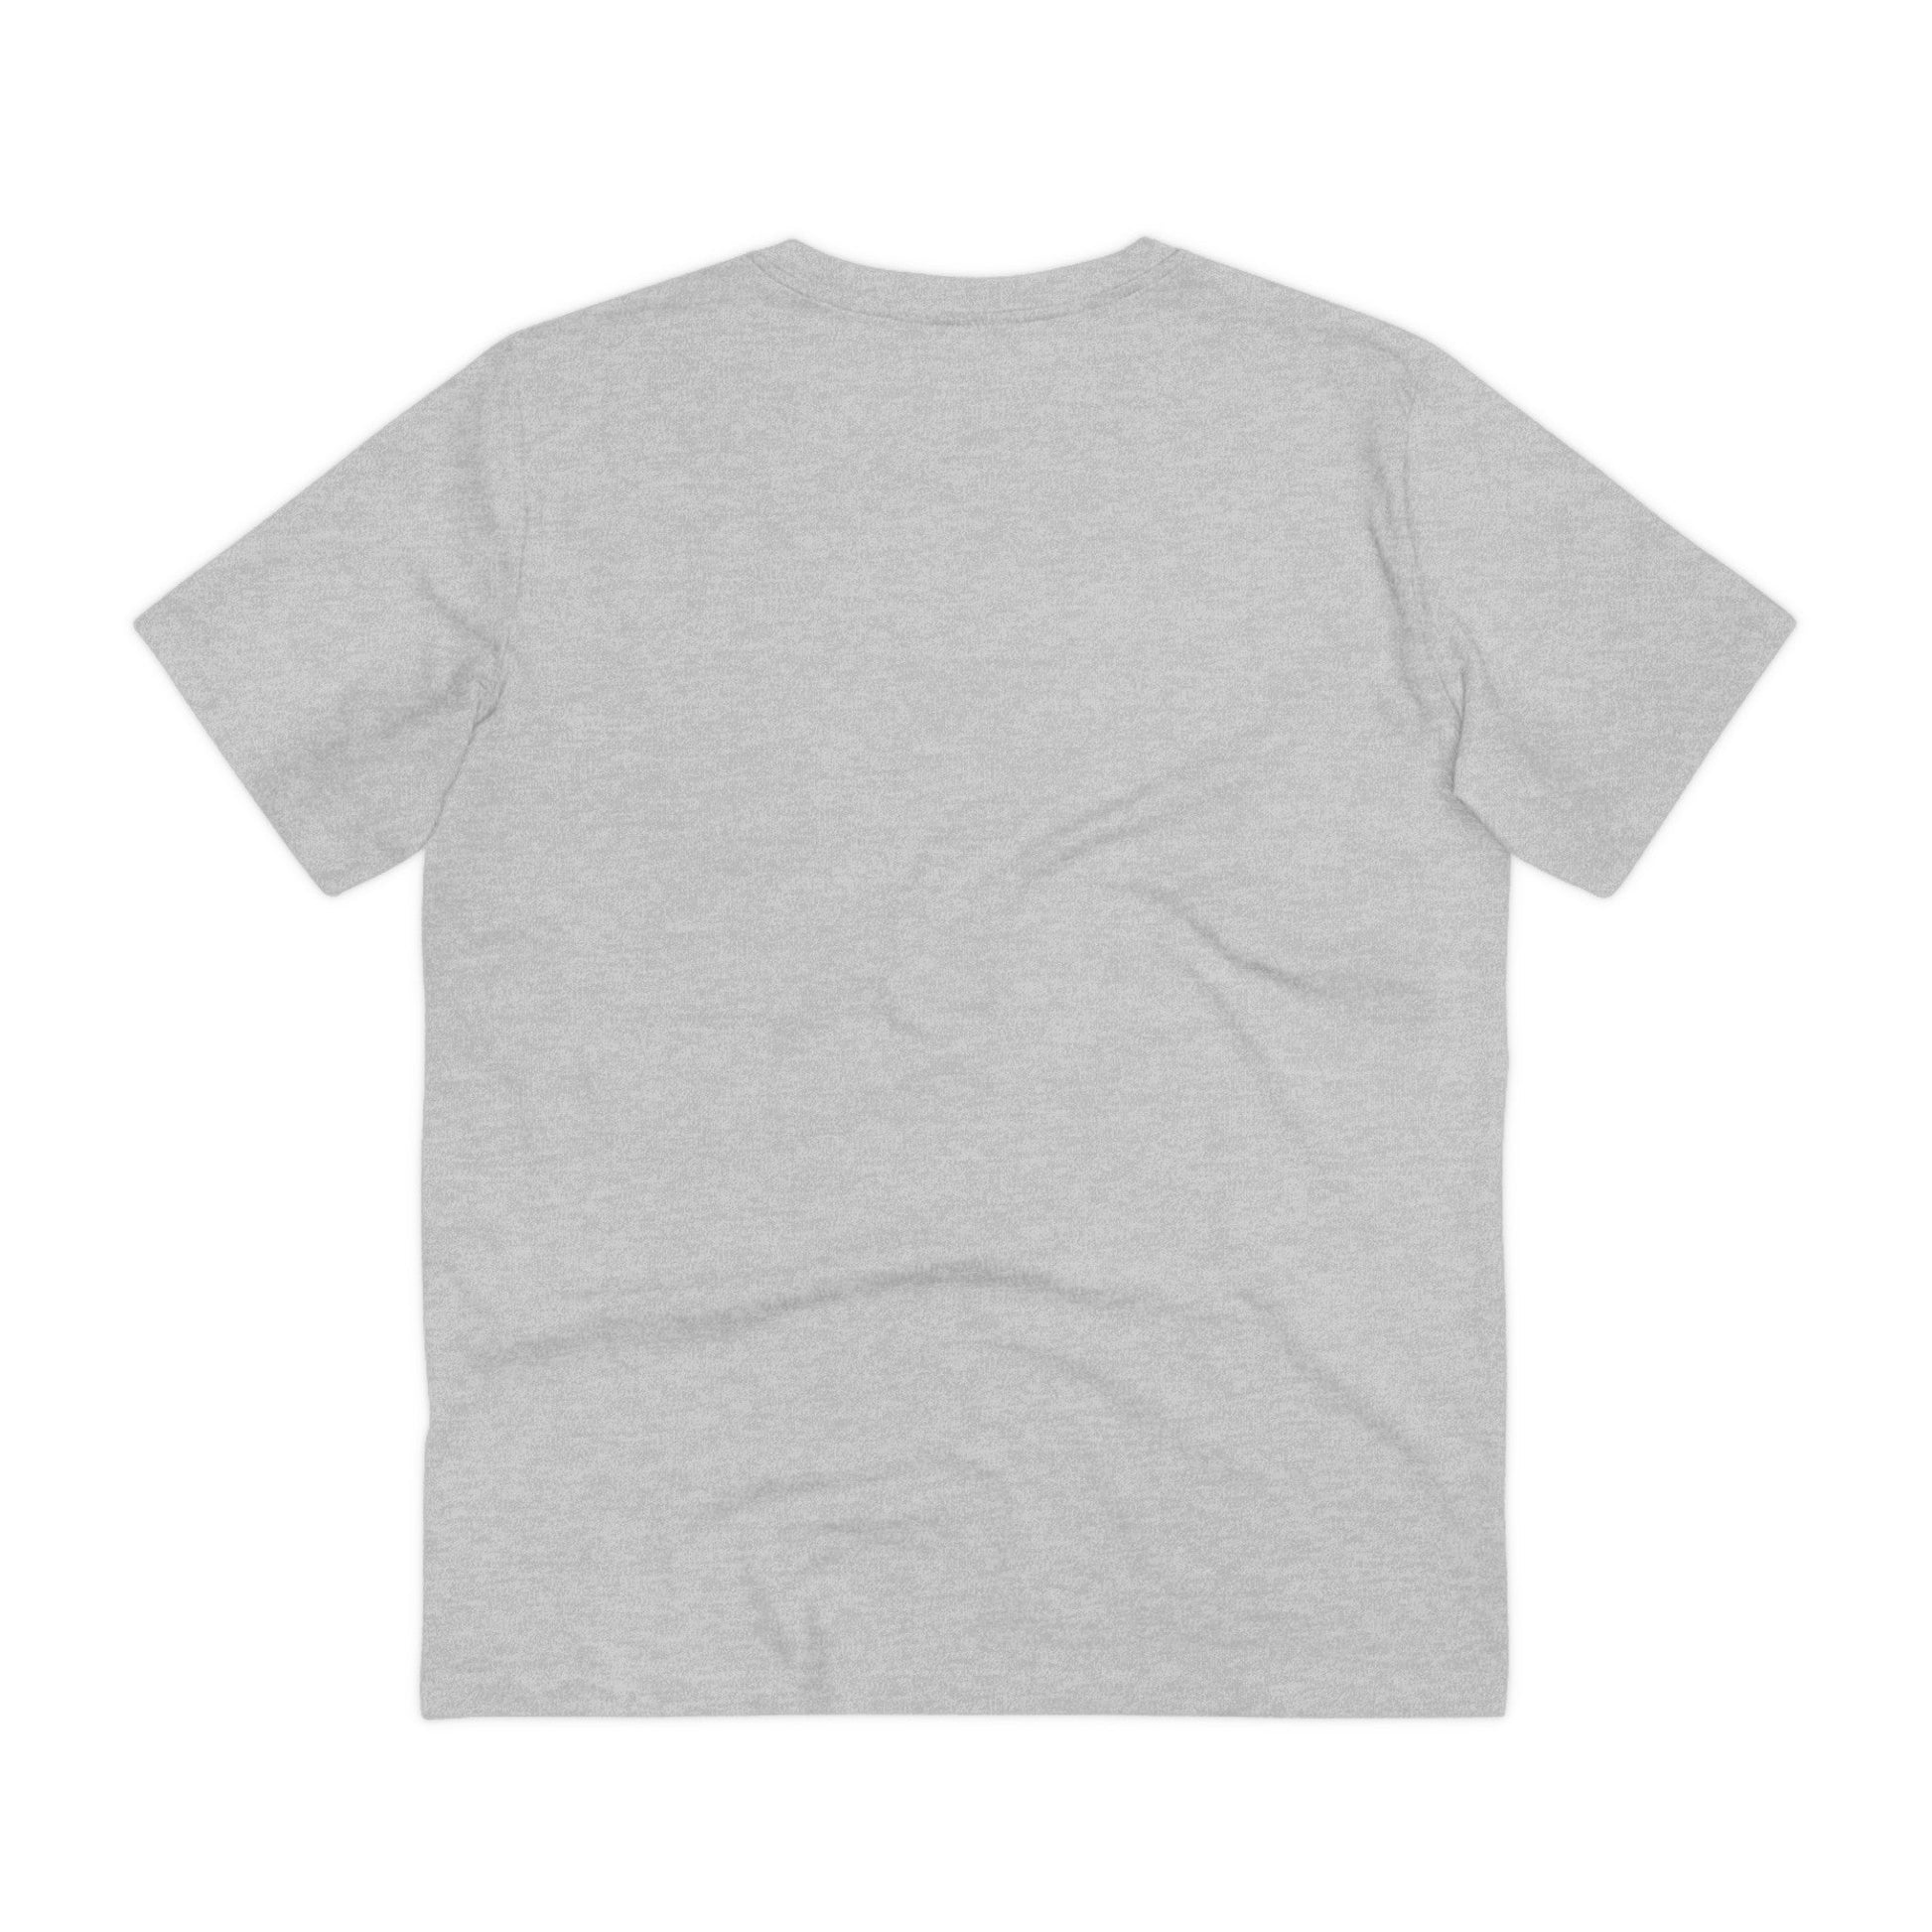 Printify T-Shirt Royal Animals King Nothing - Streetwear - King Breaker - Front Design